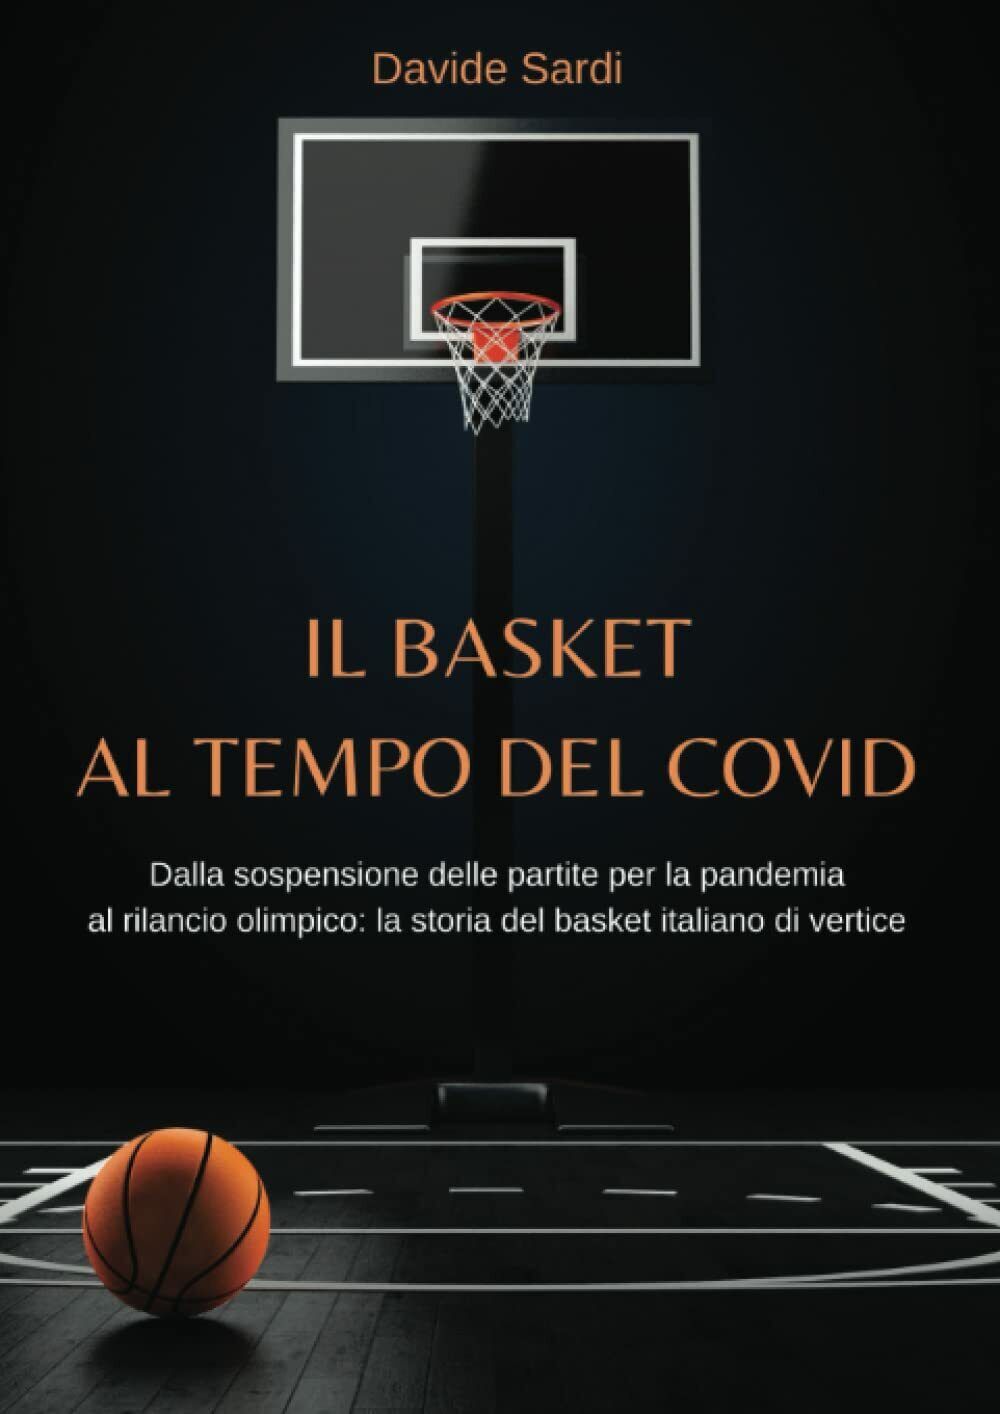 Il basket al tempo del Covi d - Davide Sardi - StreetLib, 2022 libro usato